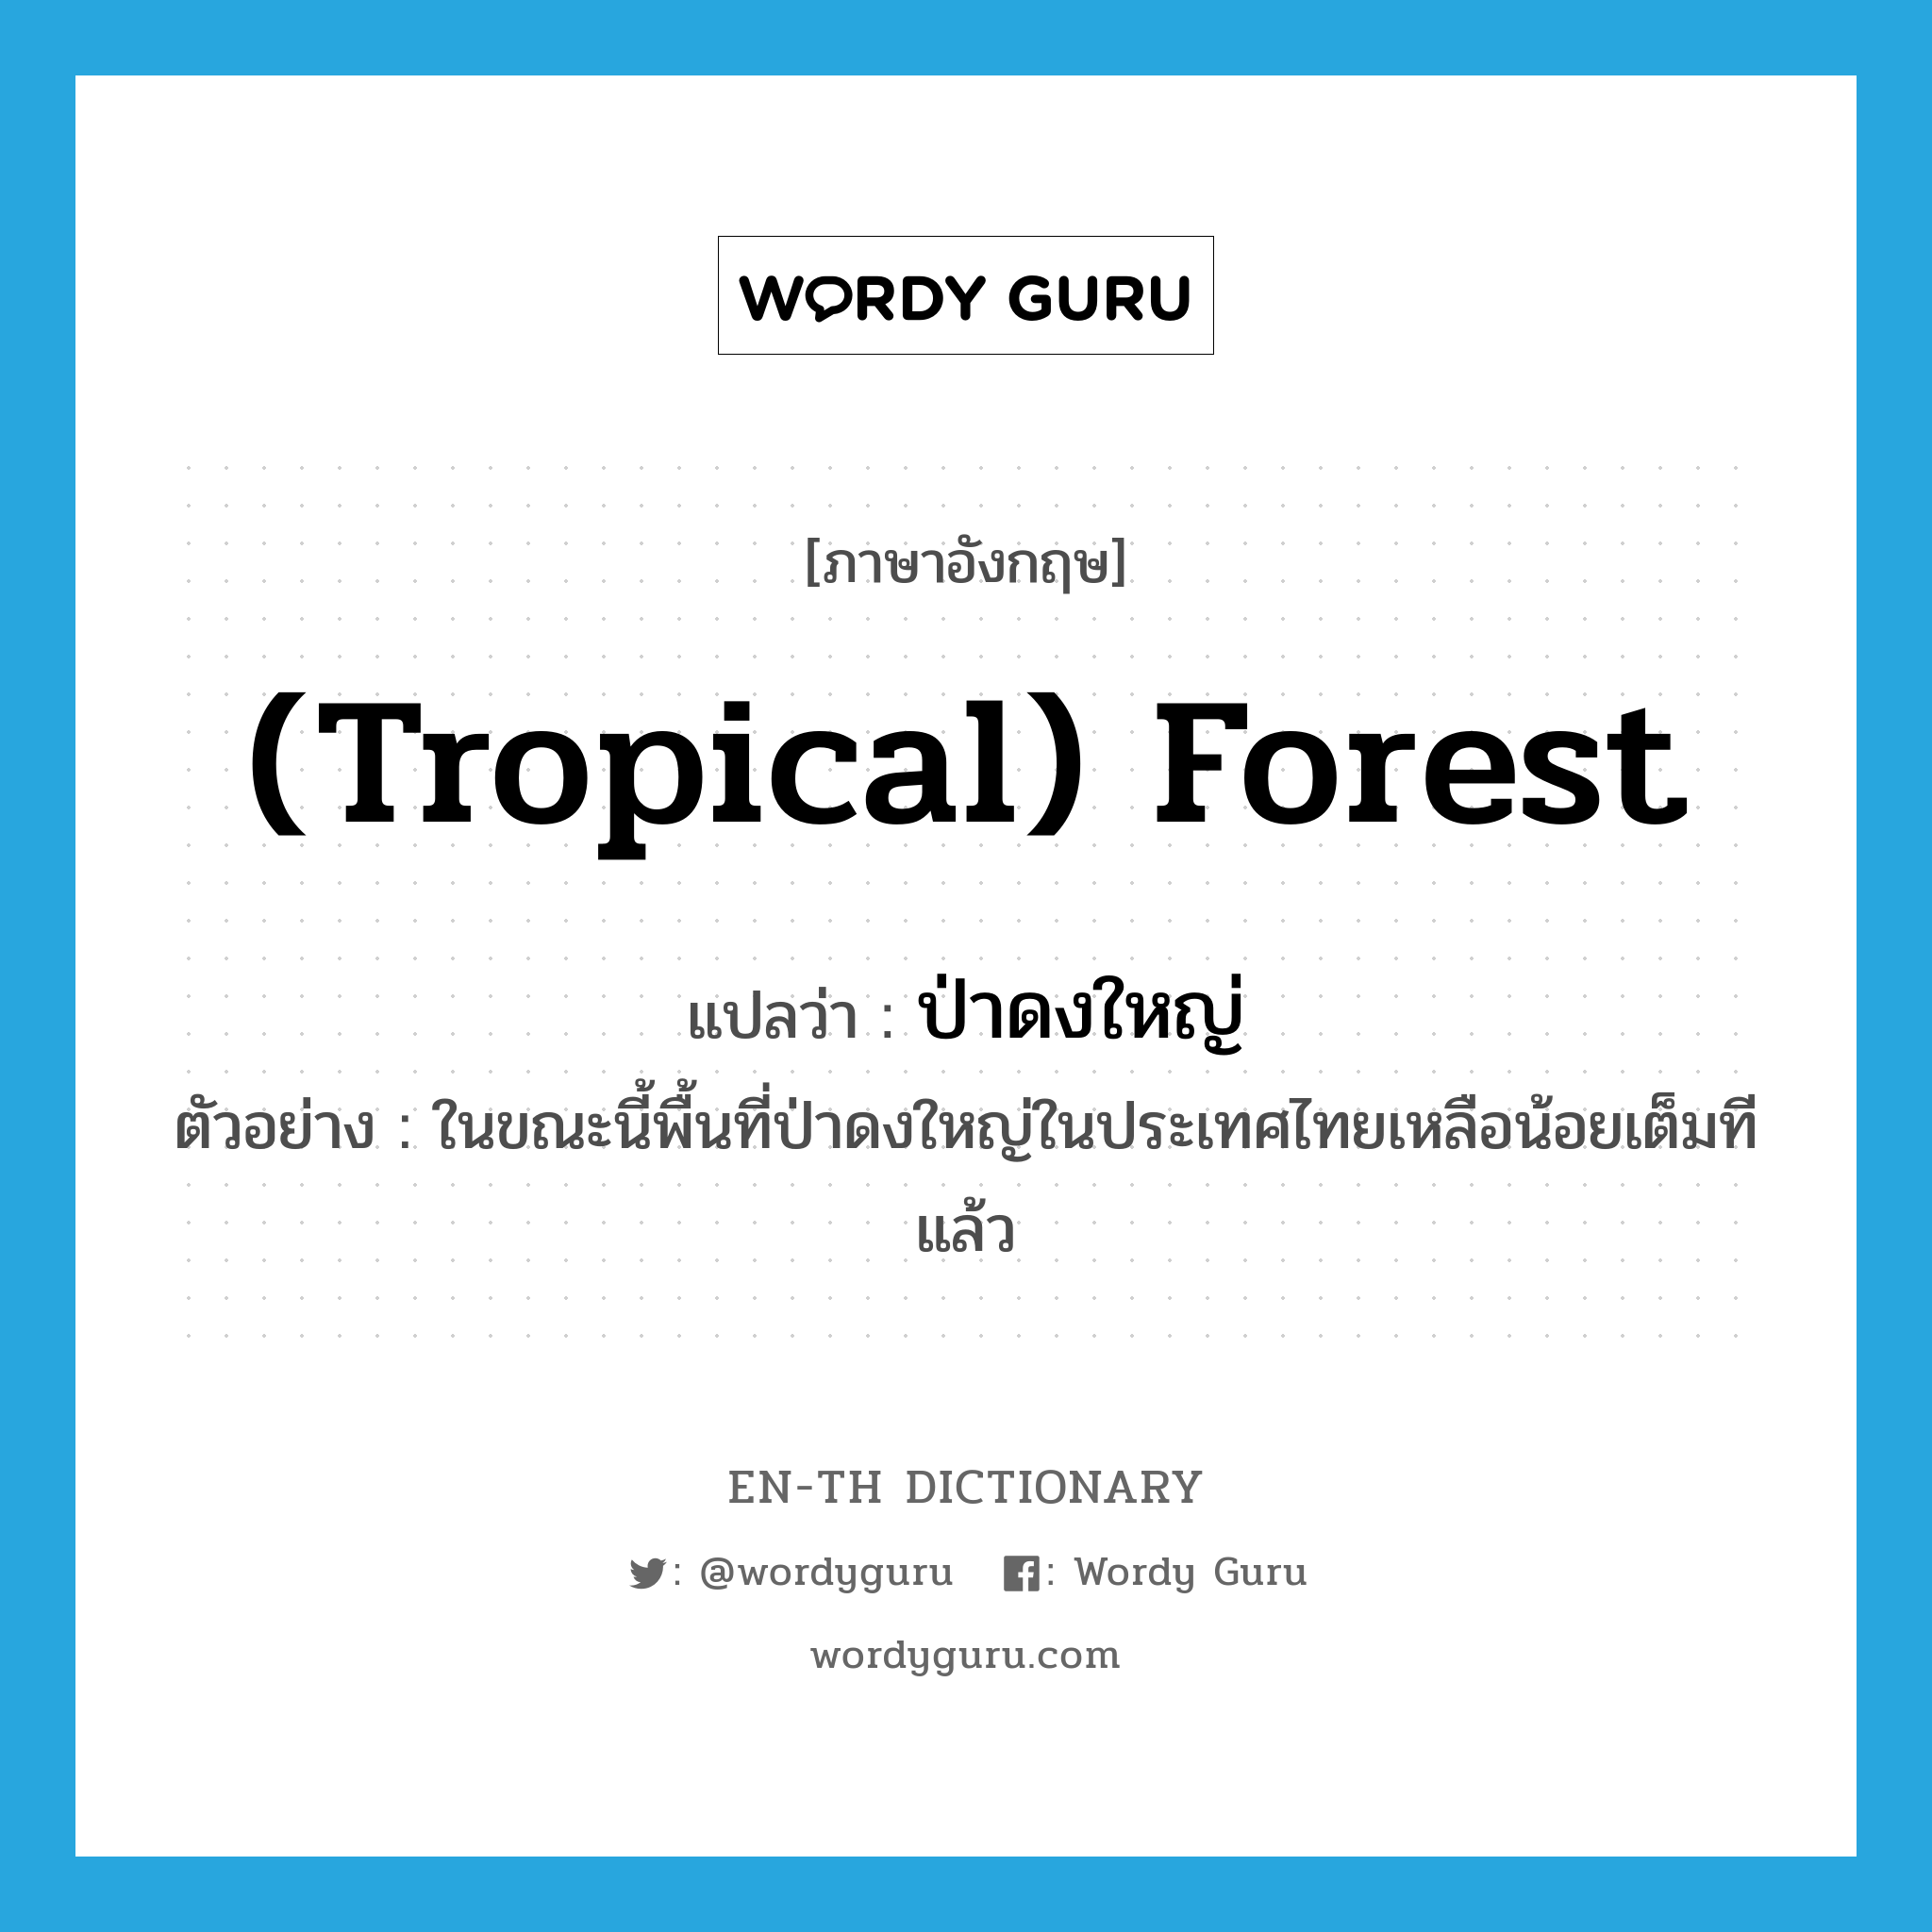 (tropical) forest แปลว่า?, คำศัพท์ภาษาอังกฤษ (tropical) forest แปลว่า ป่าดงใหญ่ ประเภท N ตัวอย่าง ในขณะนี้พื้นที่ป่าดงใหญ่ในประเทศไทยเหลือน้อยเต็มทีแล้ว หมวด N